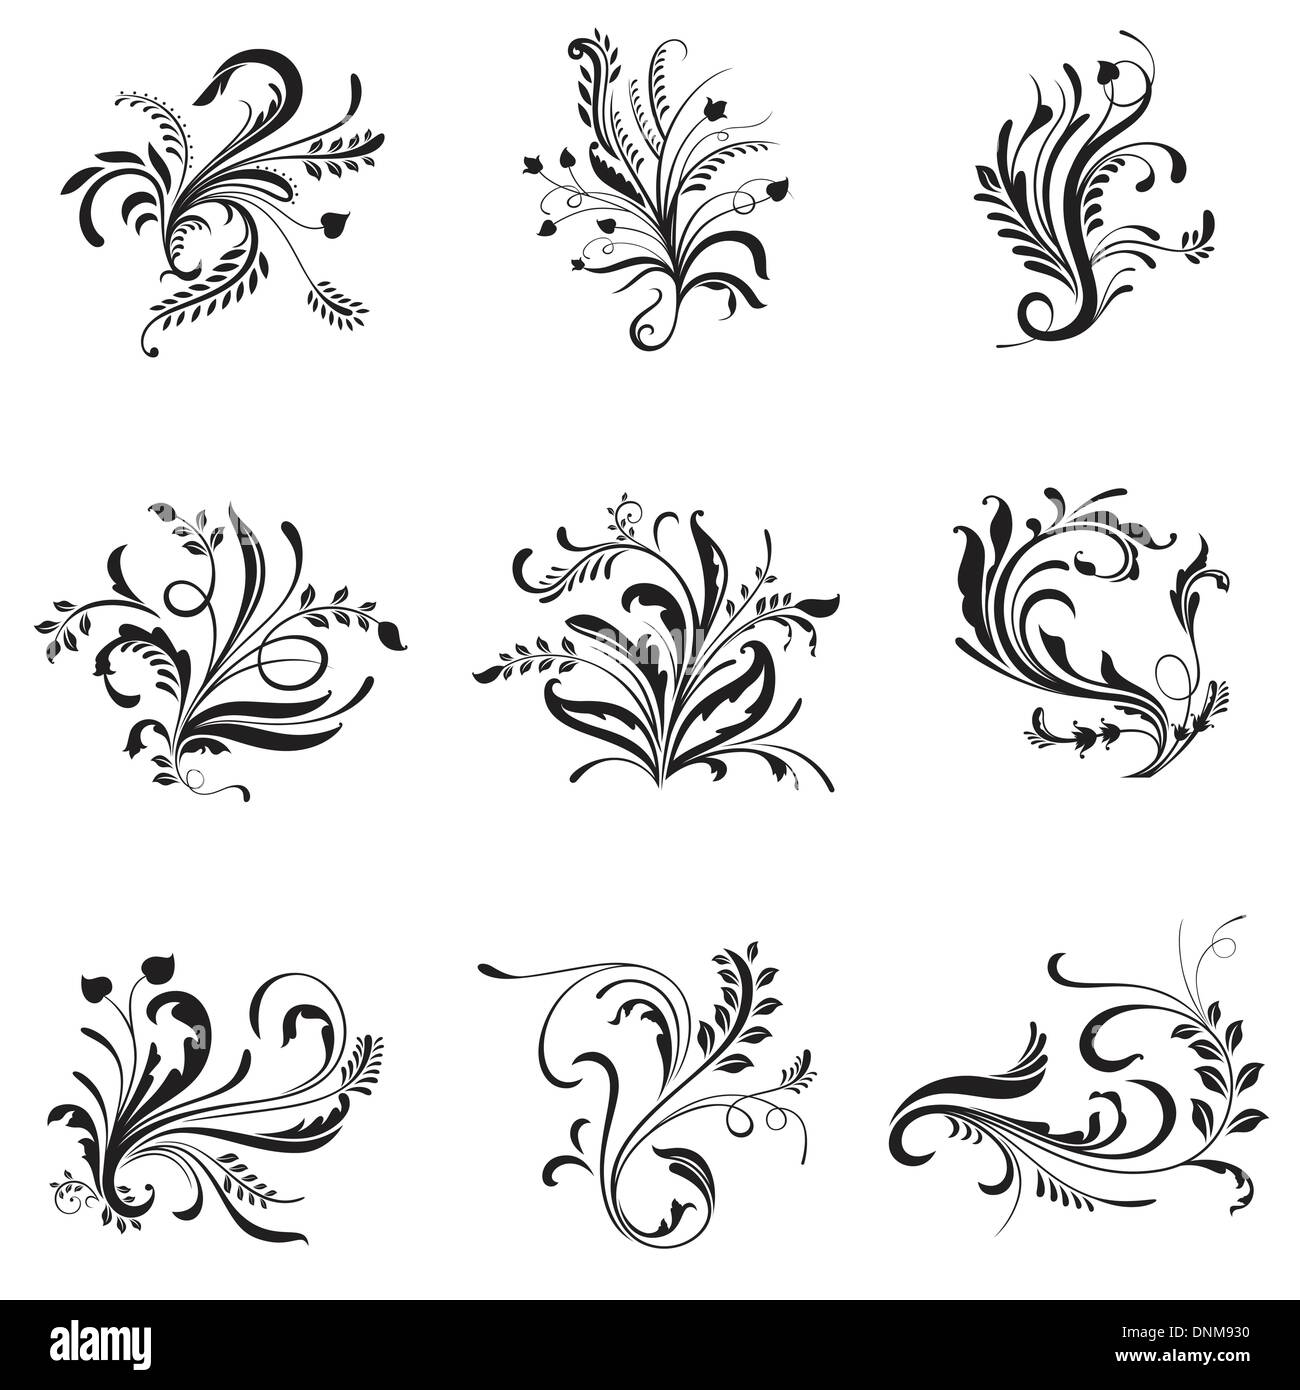 Eine Vektor-Illustration Blumenornamente für Design-Elemente in schwarz und weiß Stock Vektor